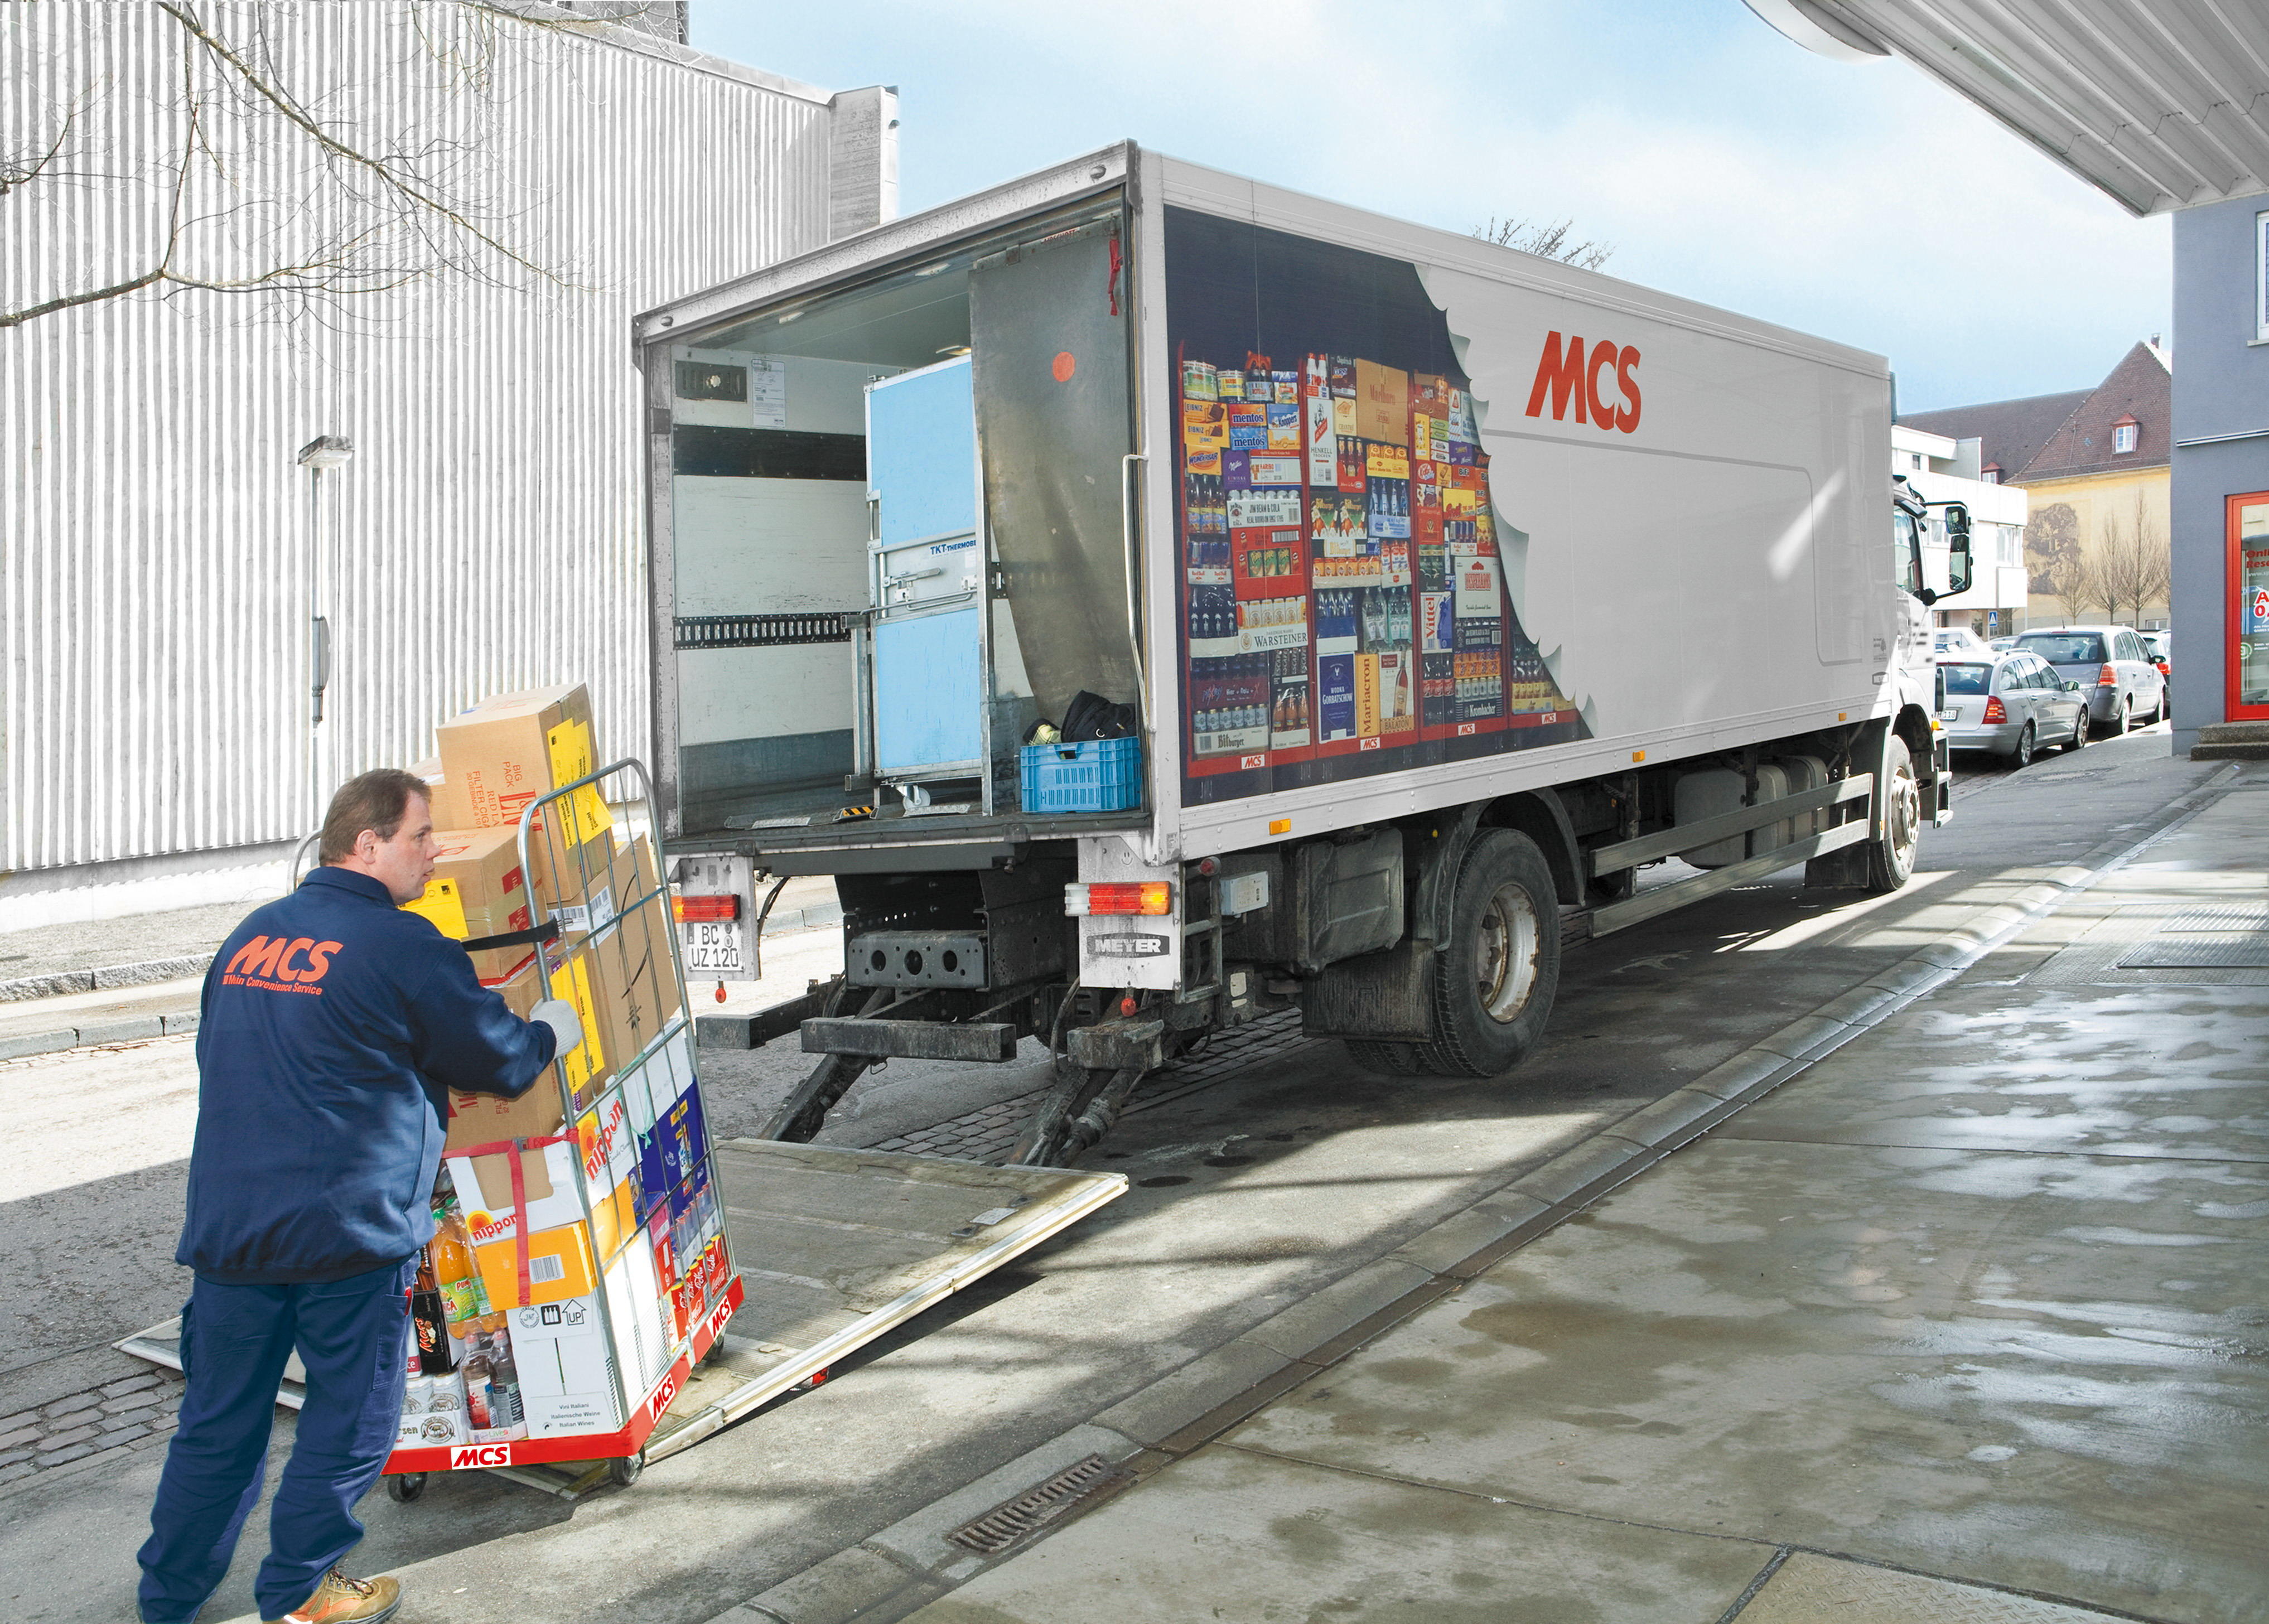 Bilder MCS - Marketing und Convenience-Shop System GmbH